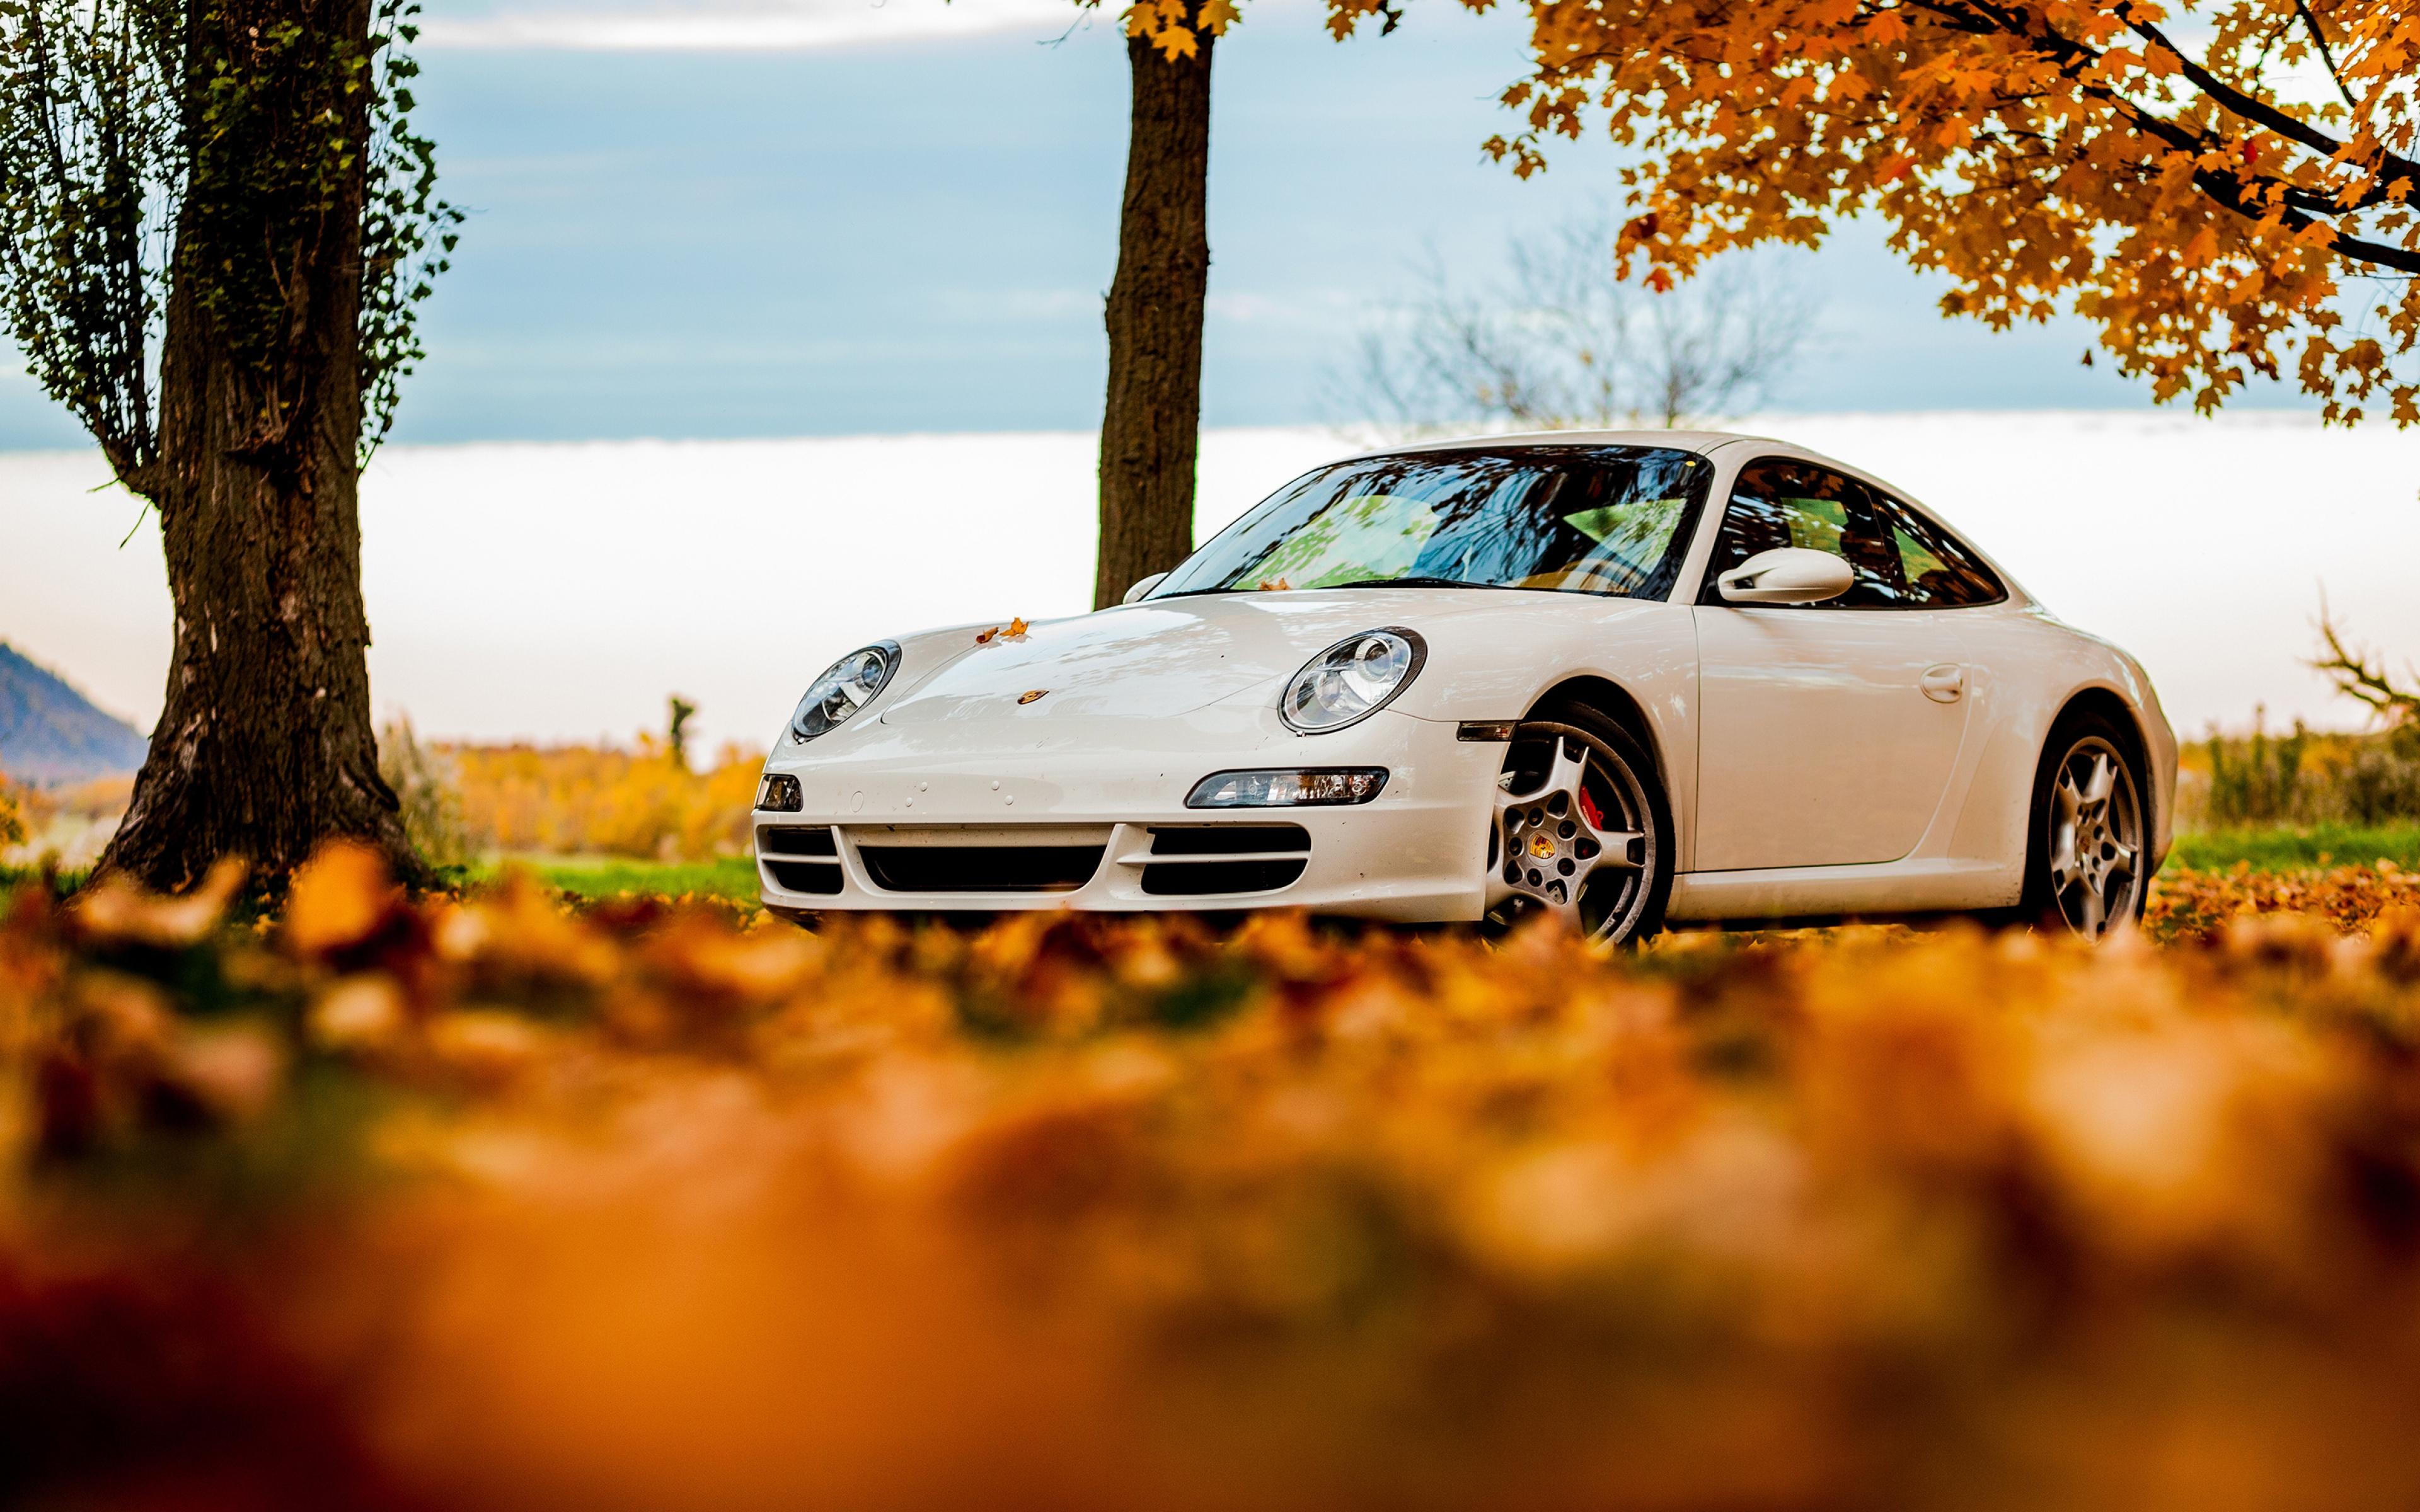 3840 x 2400 · jpeg - Porsche 4k Ultra HD Wallpaper and Background | 3840x2400 | ID:523940